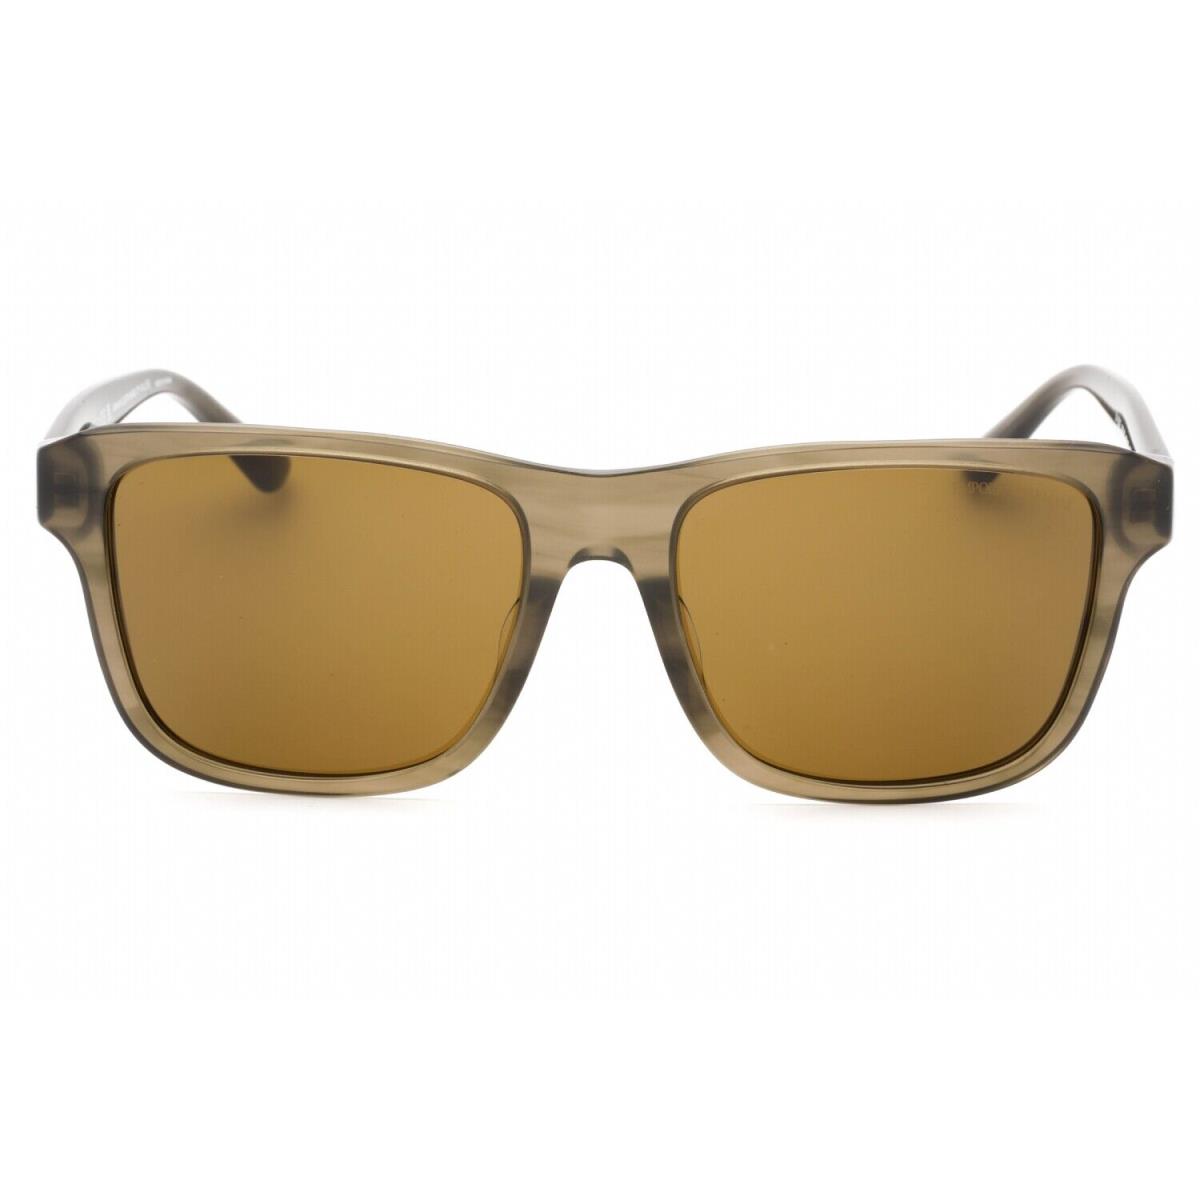 Emporio Armani EA4208F-605573-57 Sunglasses Size 57mm 145mm 18mm Brown Men